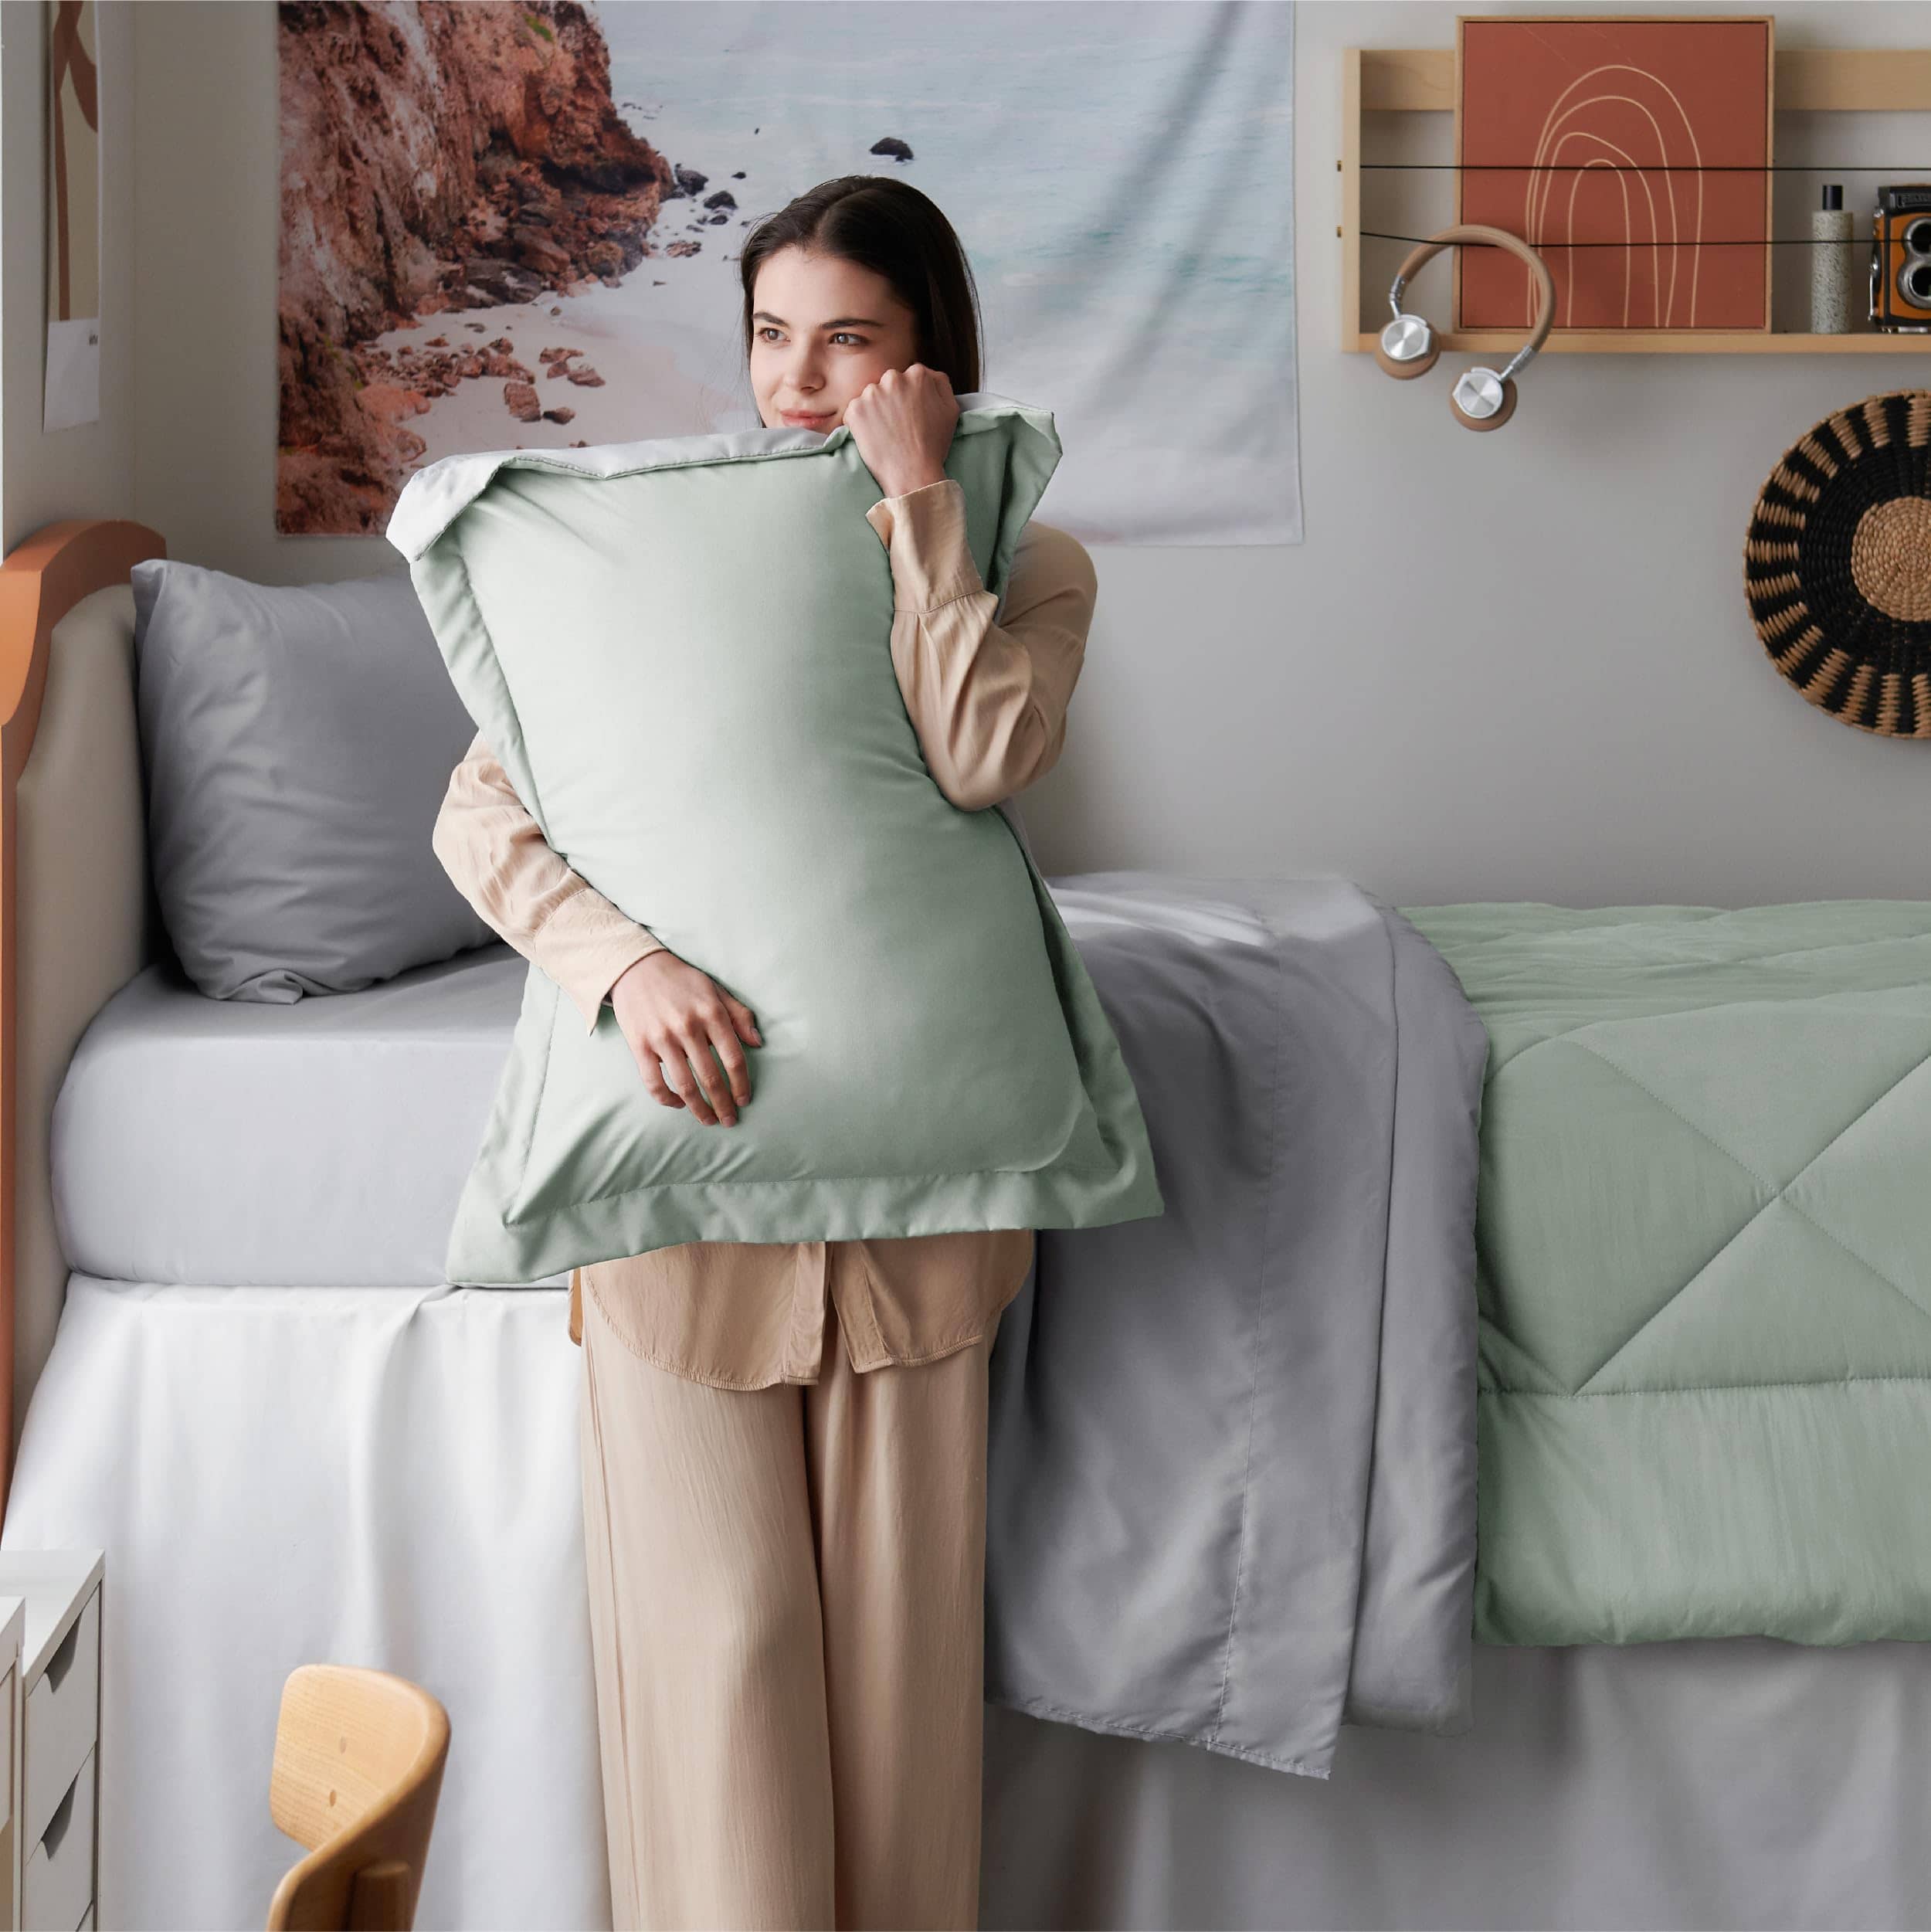 Comforter Sets Bedding In a Bag